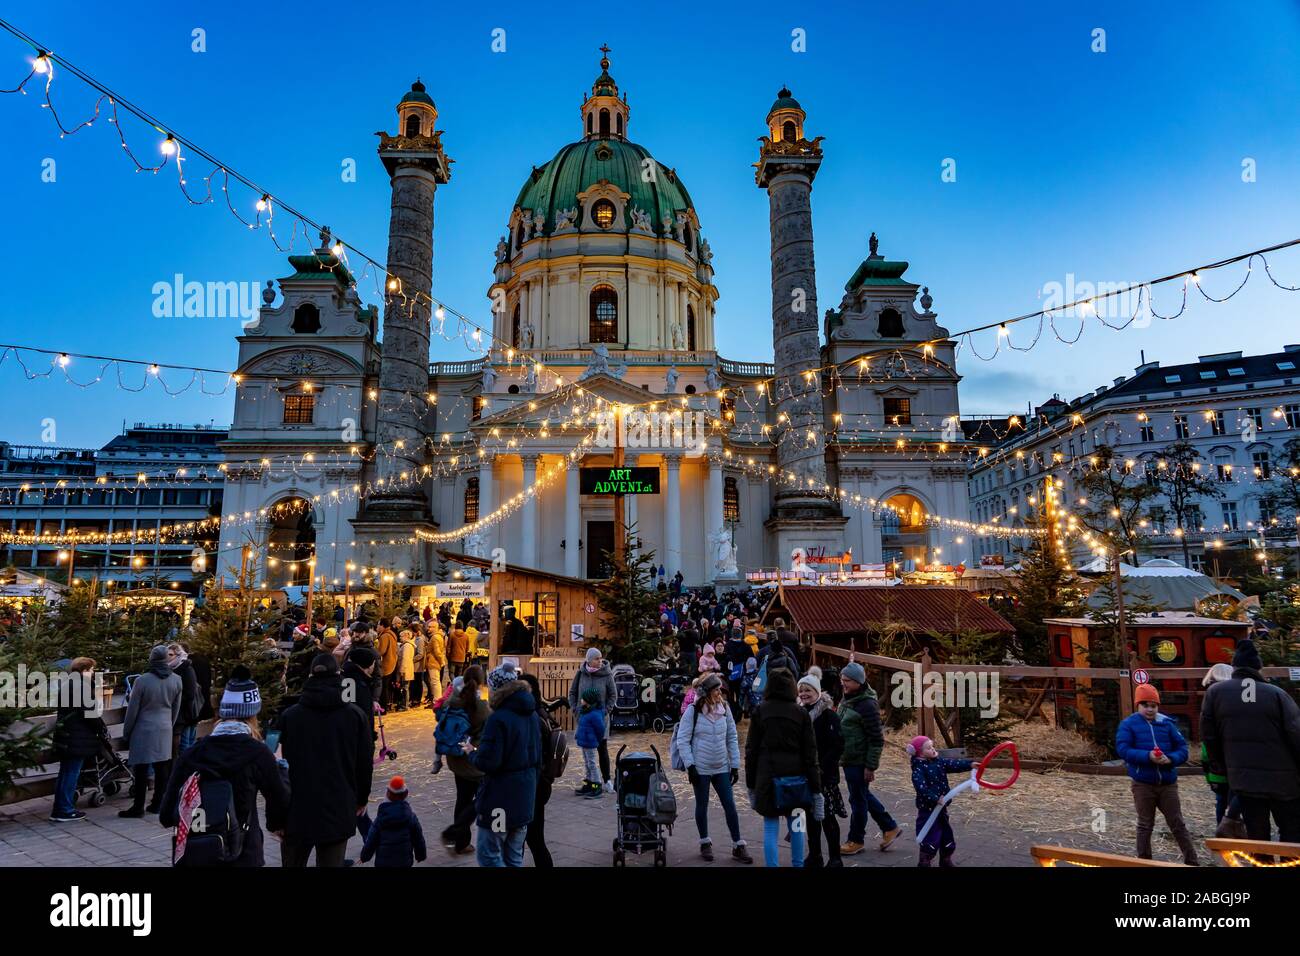 Vienne, Autriche - 11.23.2019 Marché de Noël de l'art : arrivée à Vienne, à l'Karsplatz avec beaucoup de gens Banque D'Images